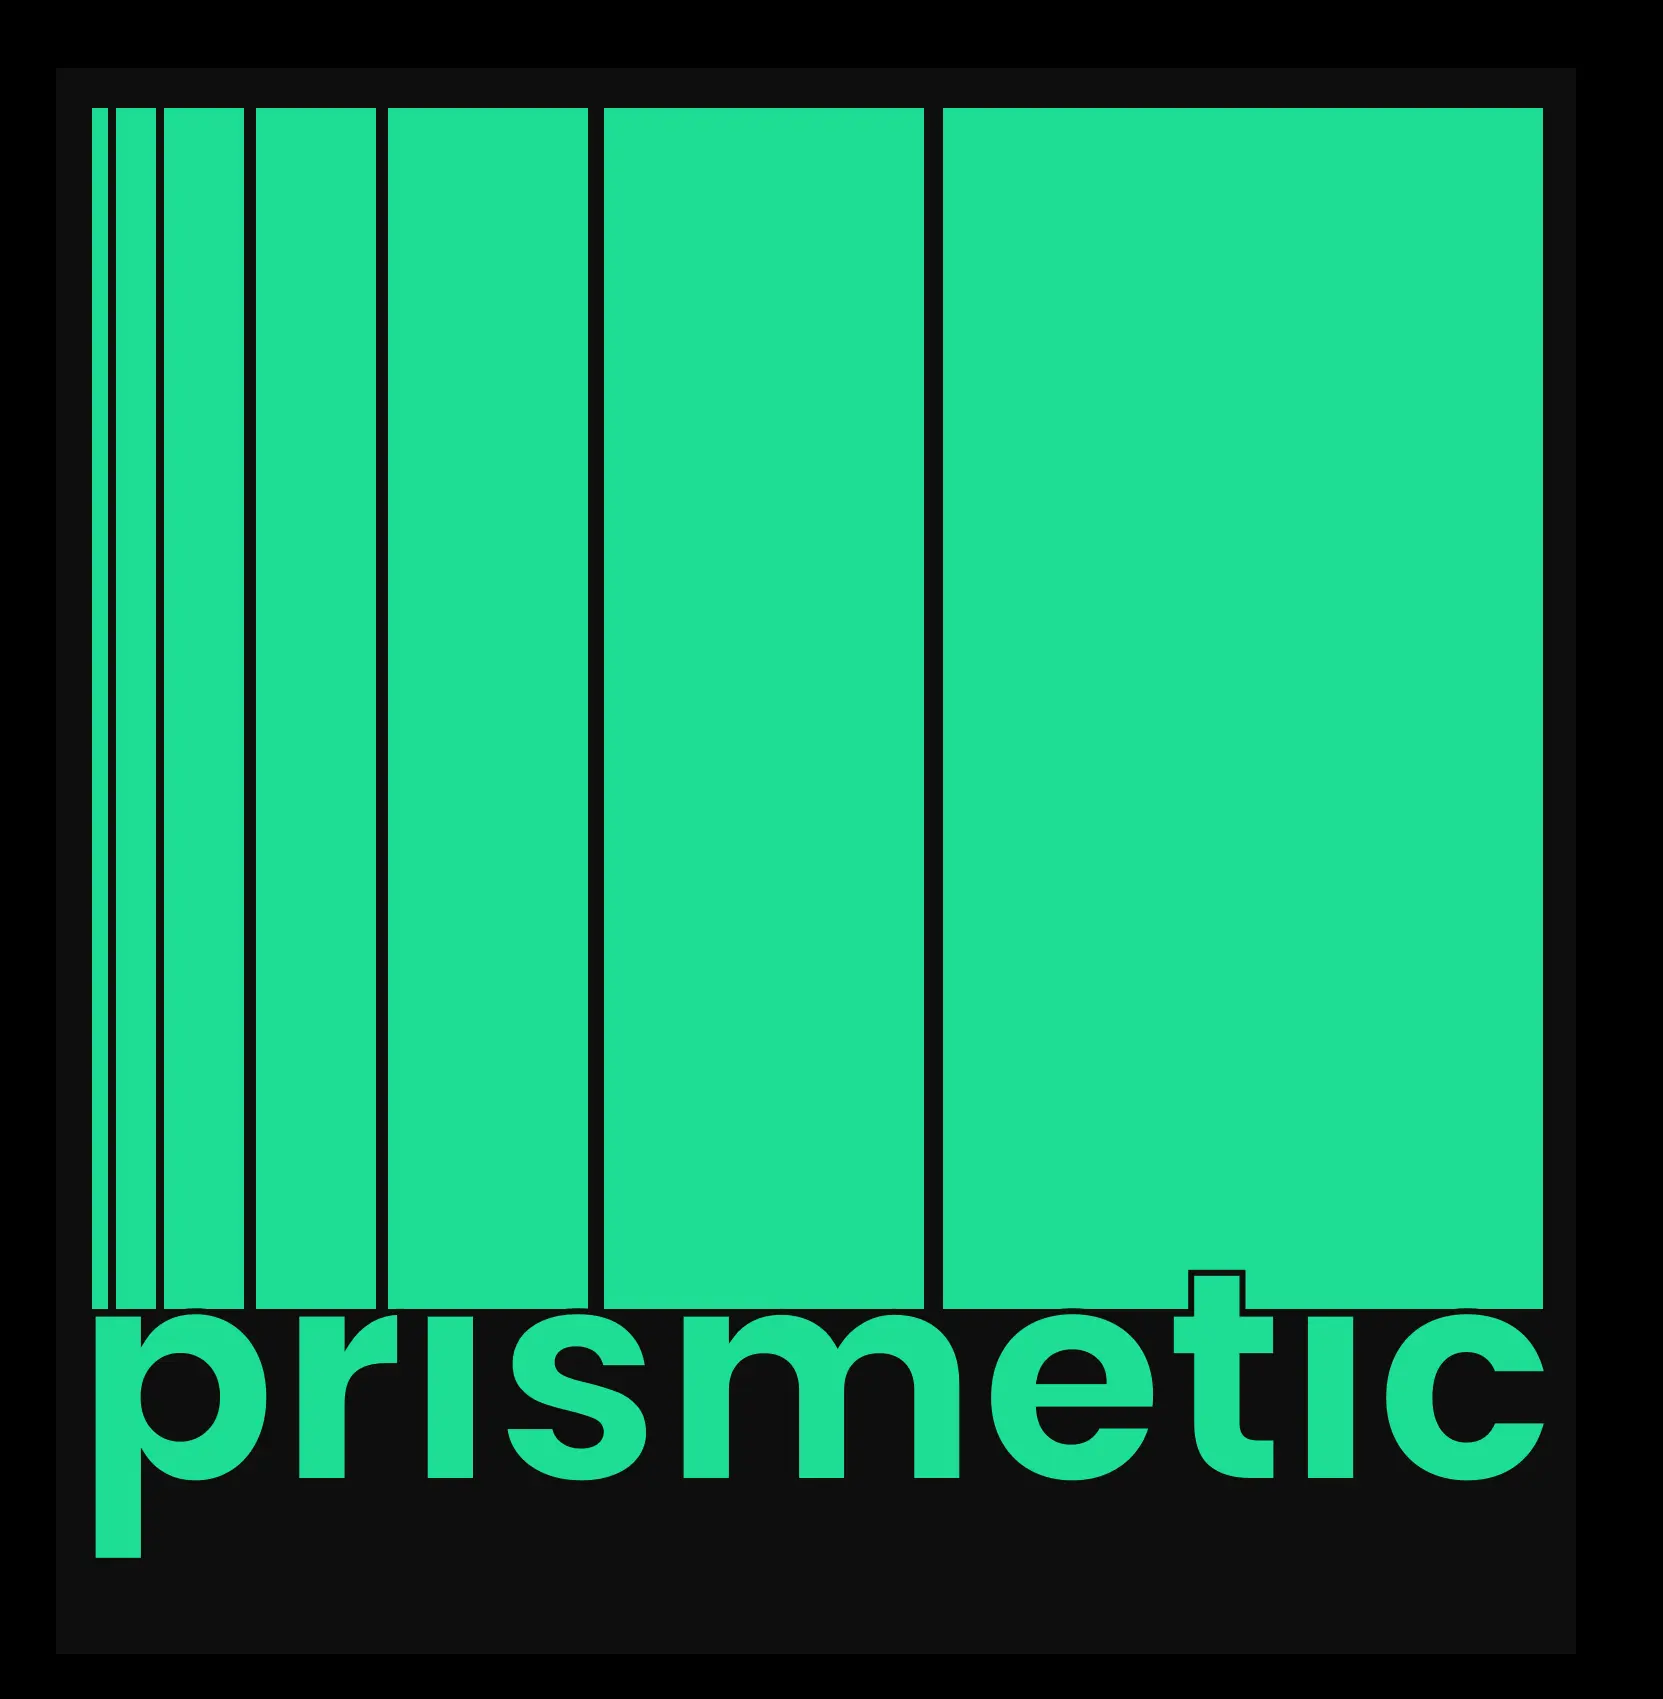 Prismetic's logo